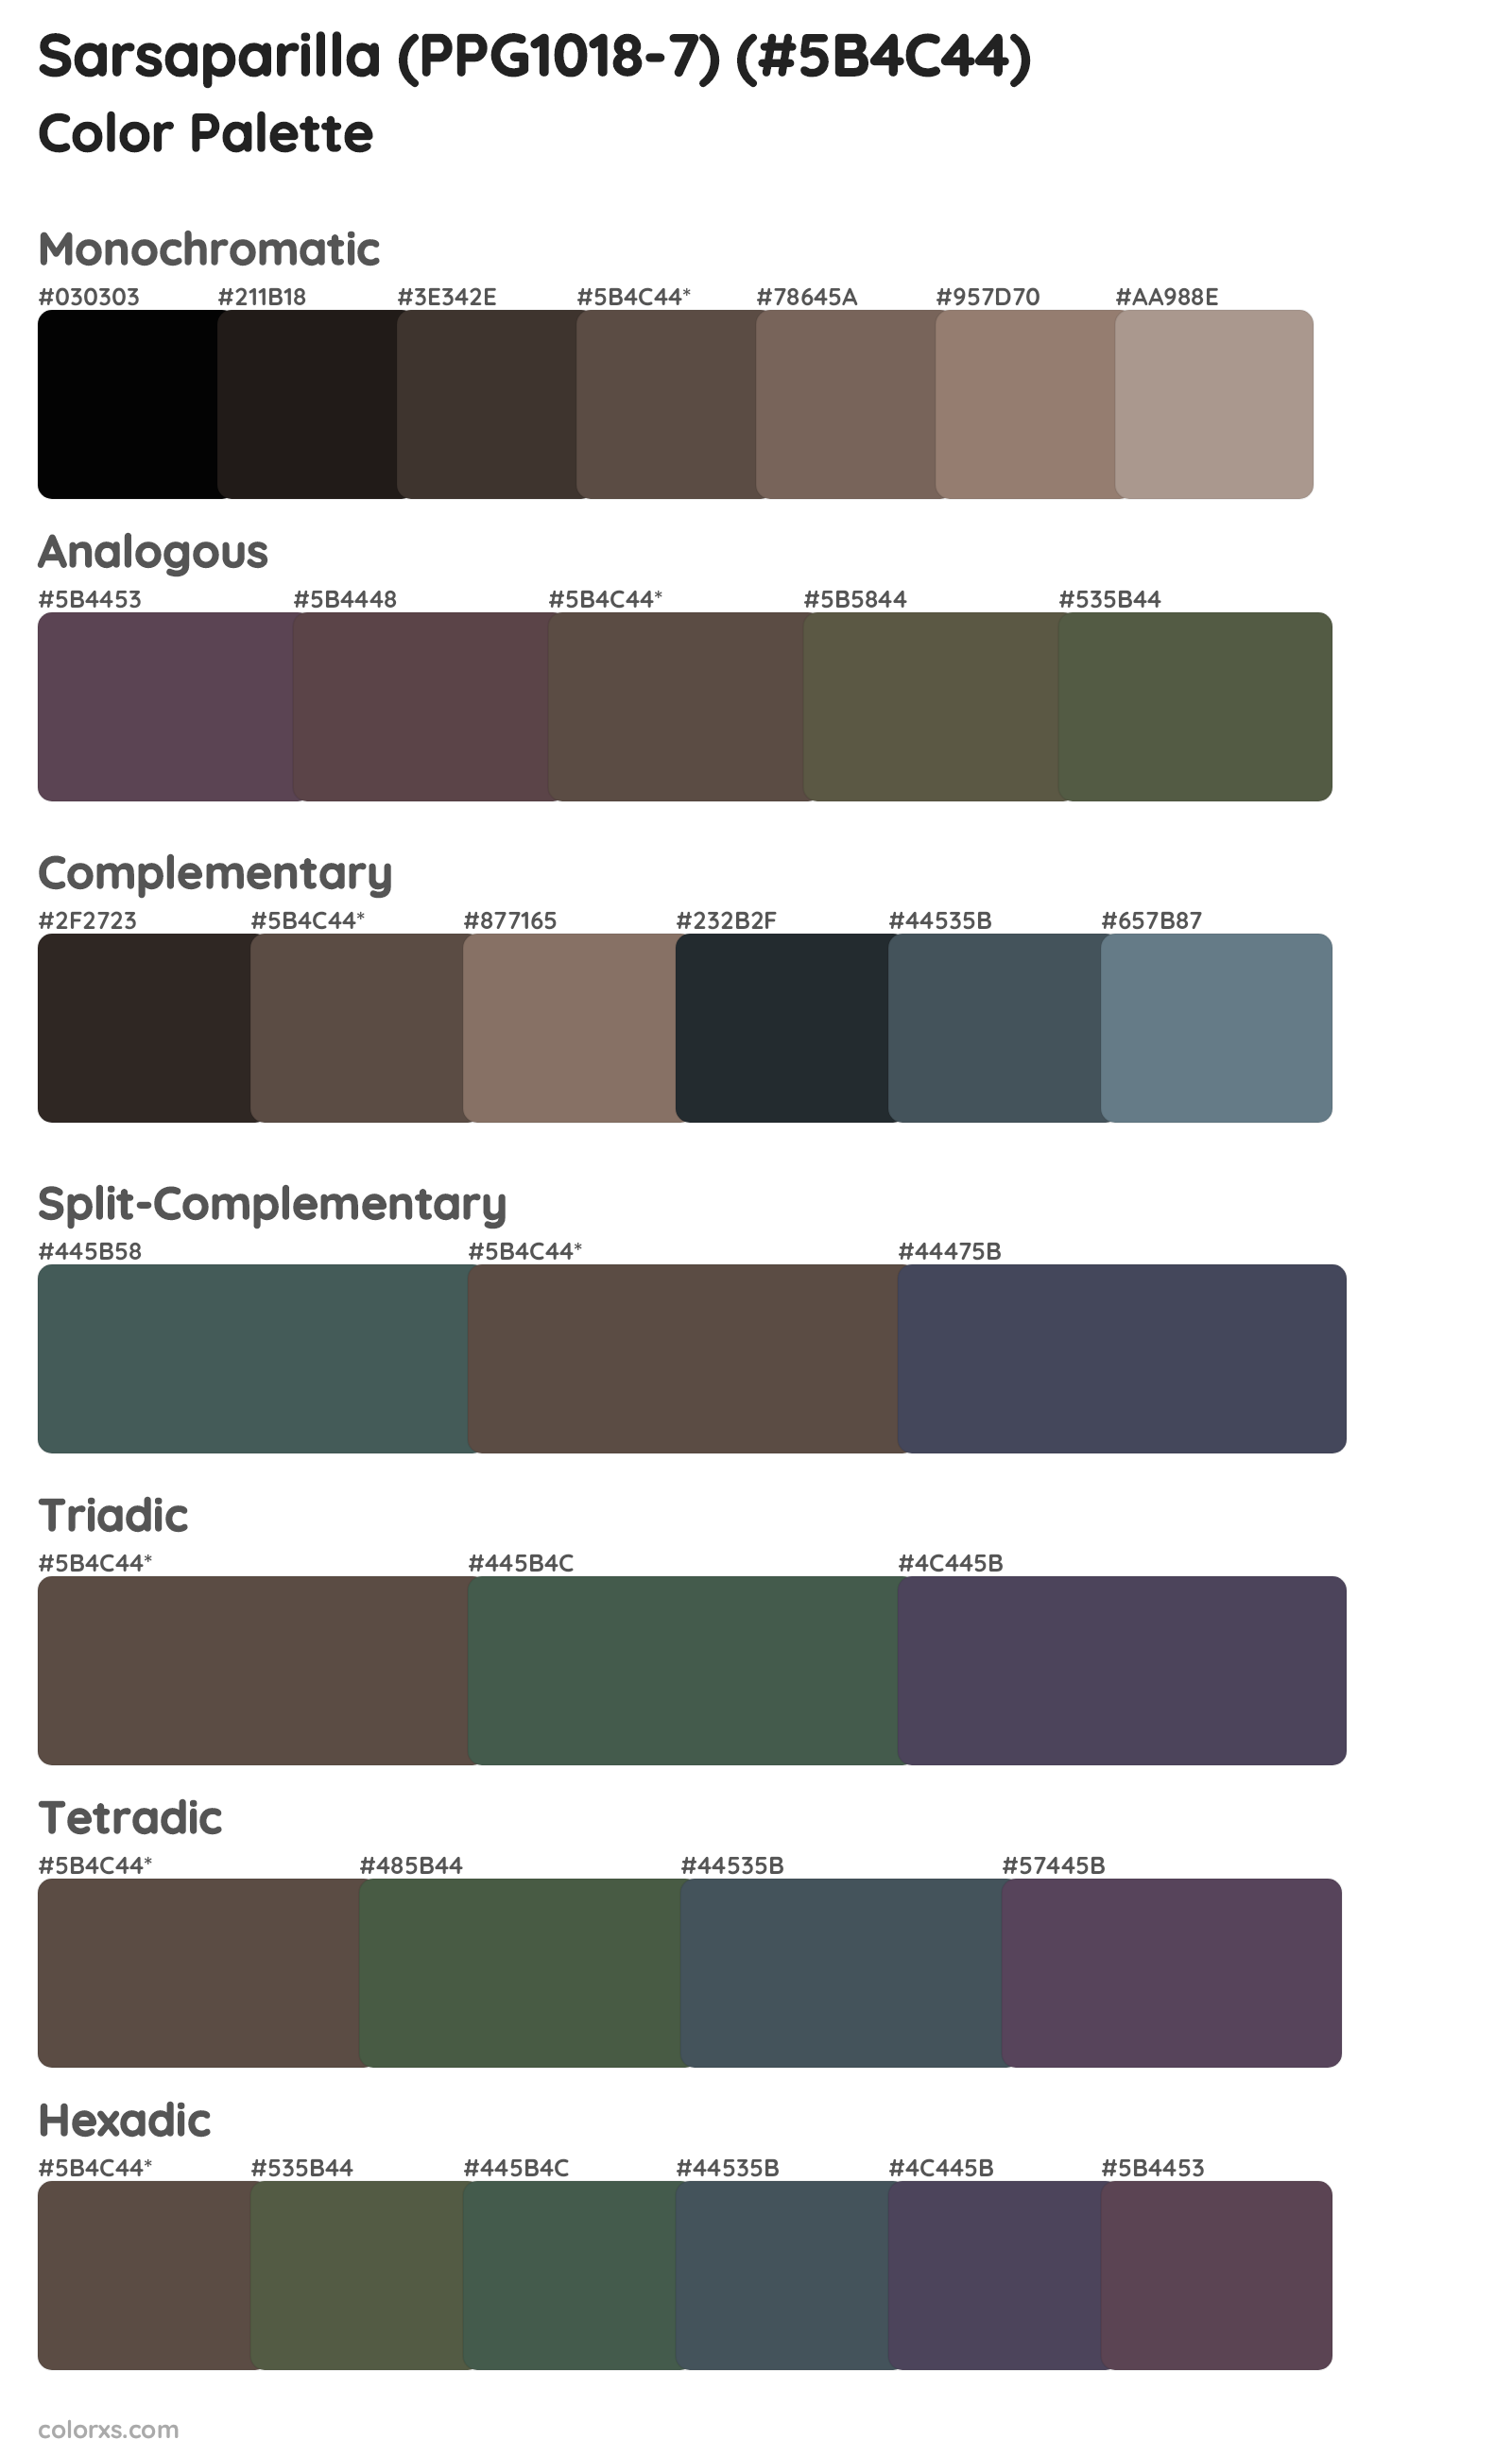 Sarsaparilla (PPG1018-7) Color Scheme Palettes